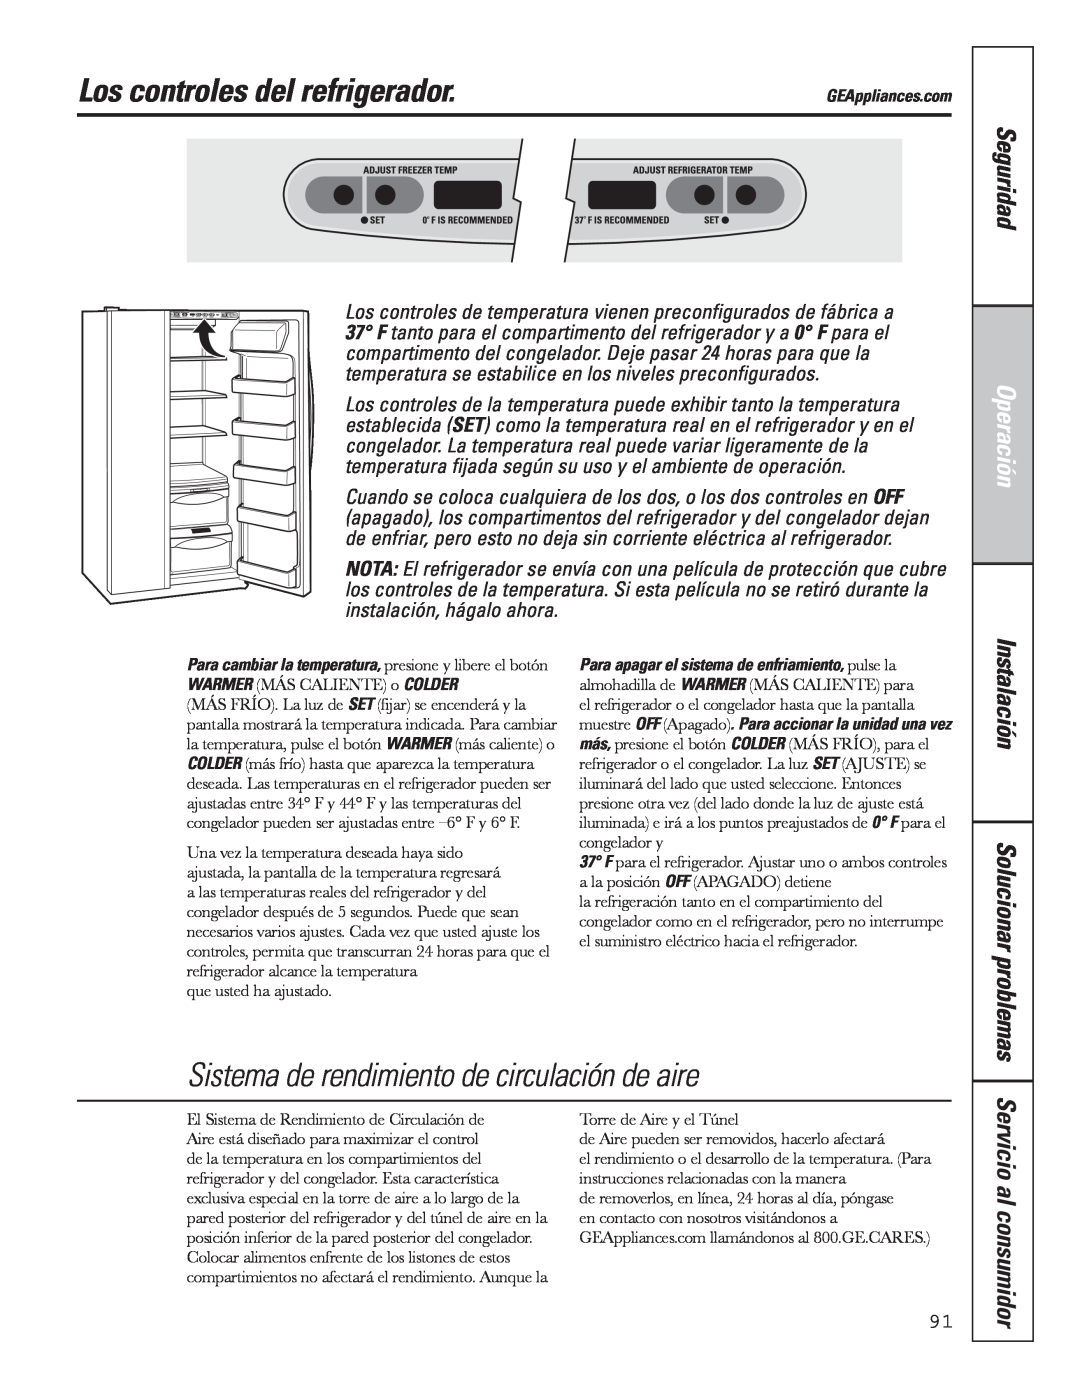 GE 200D8074P043 manual Los controles del refrigerador, Sistema de rendimiento de circulación de aire, Seguridad, Operación 